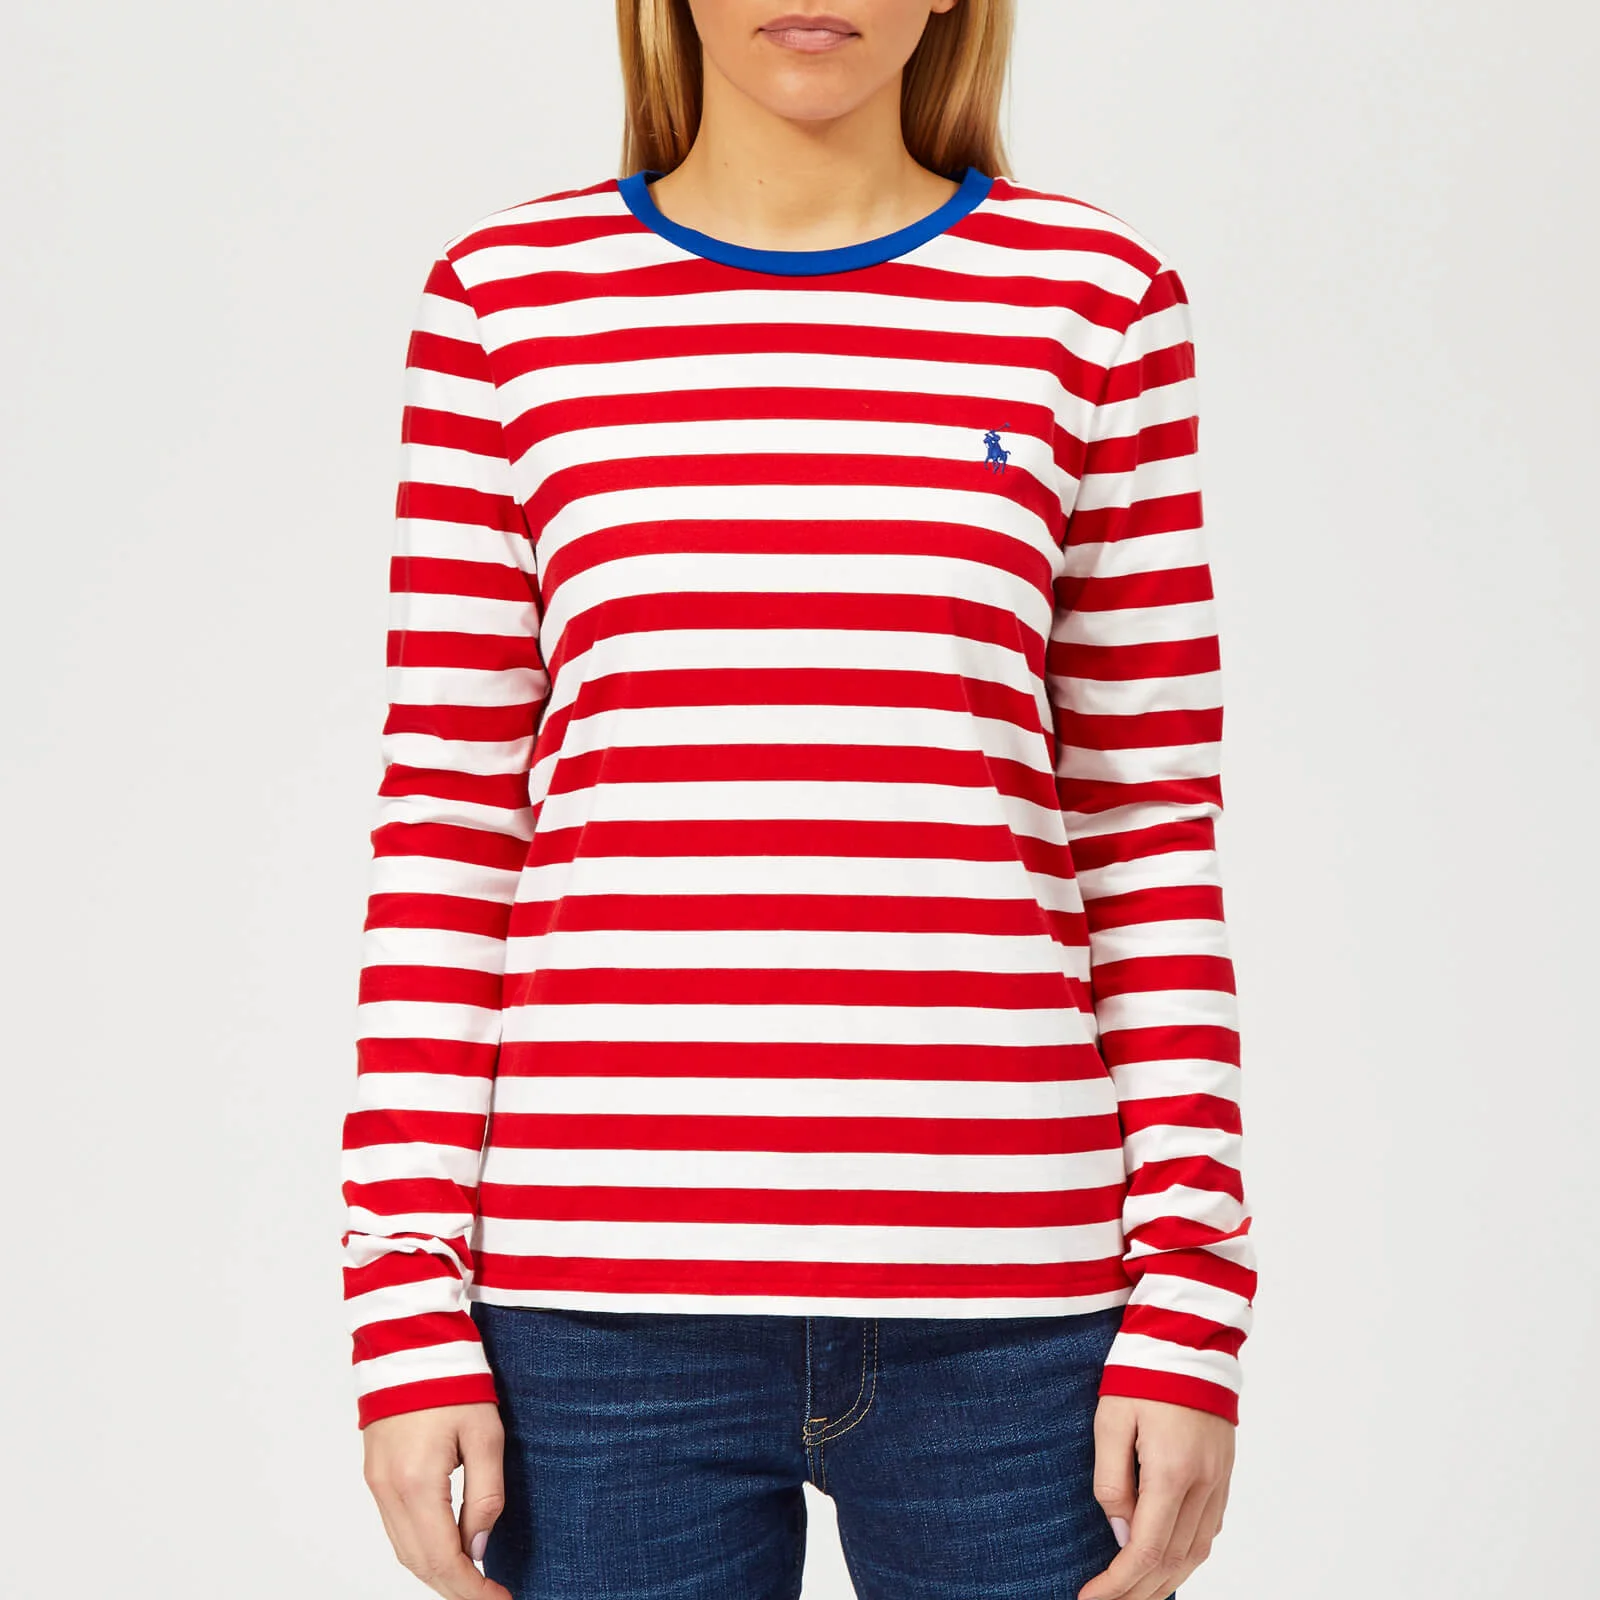 Polo Ralph Lauren Women's PP Long Sleeve Stripe Crew Neck T-Shirt - Red/White Image 1